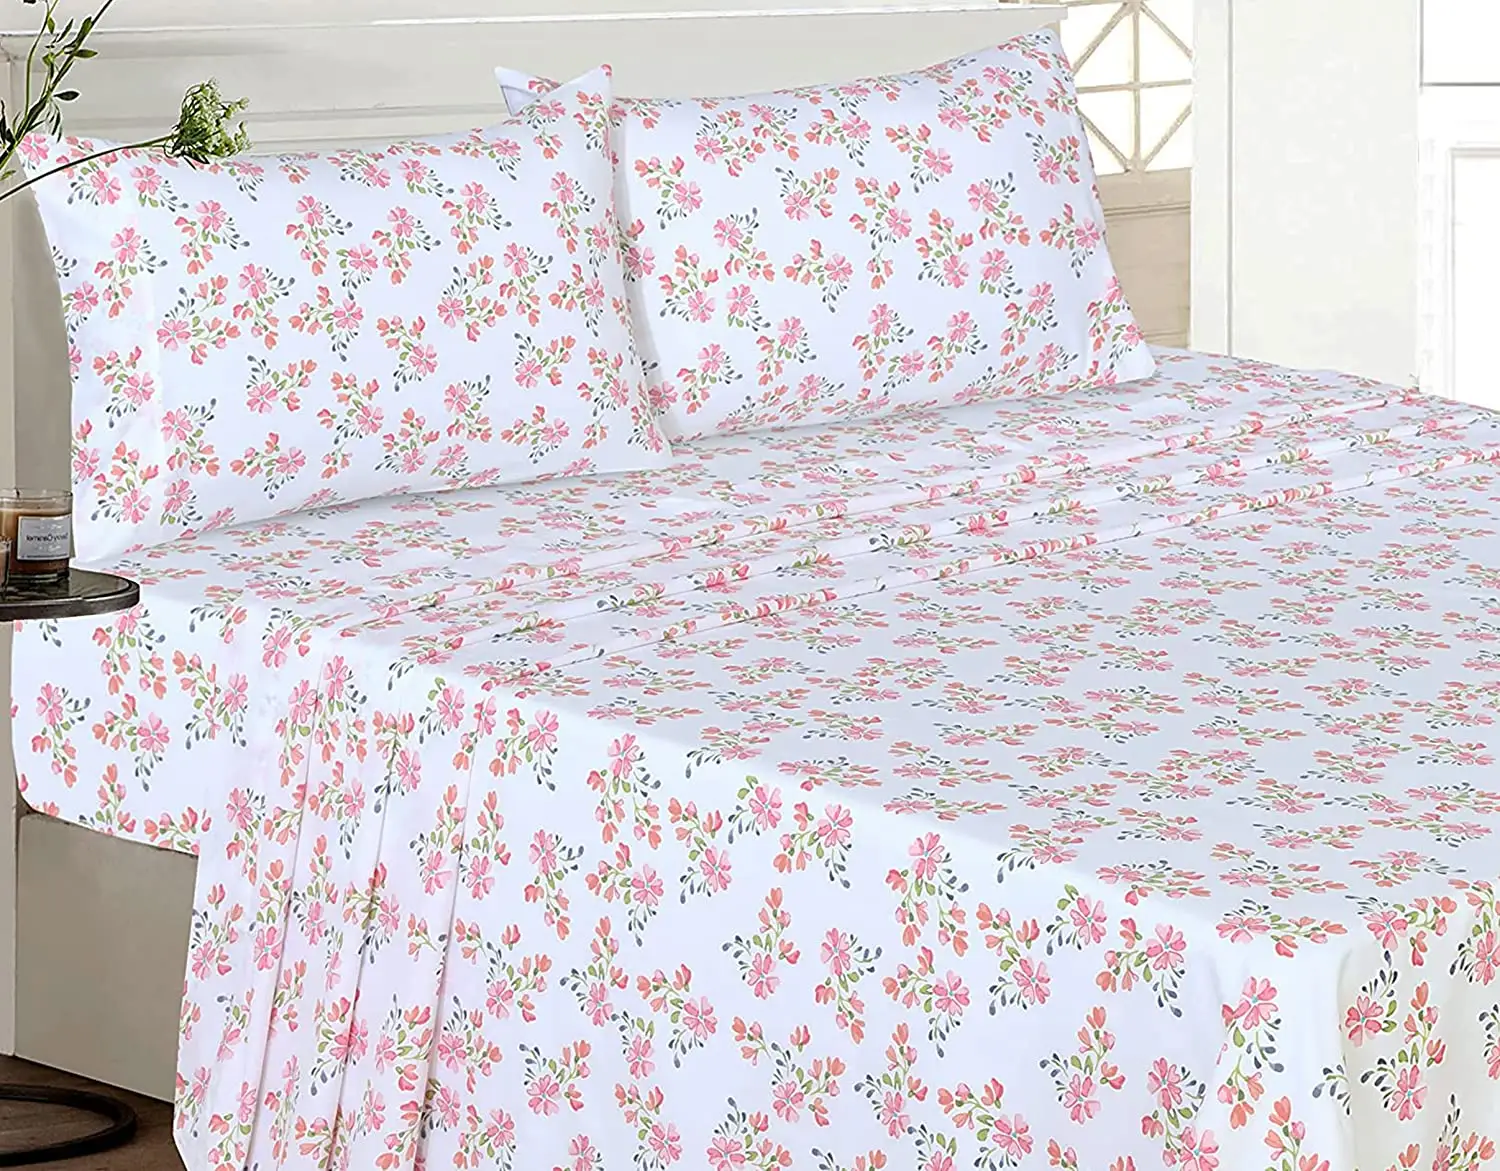 Juego de sábanas de algodón 100% con estampado Floral, ropa de cama suave y transpirable, color rojo y verde, tamaño completo, 4 unidades